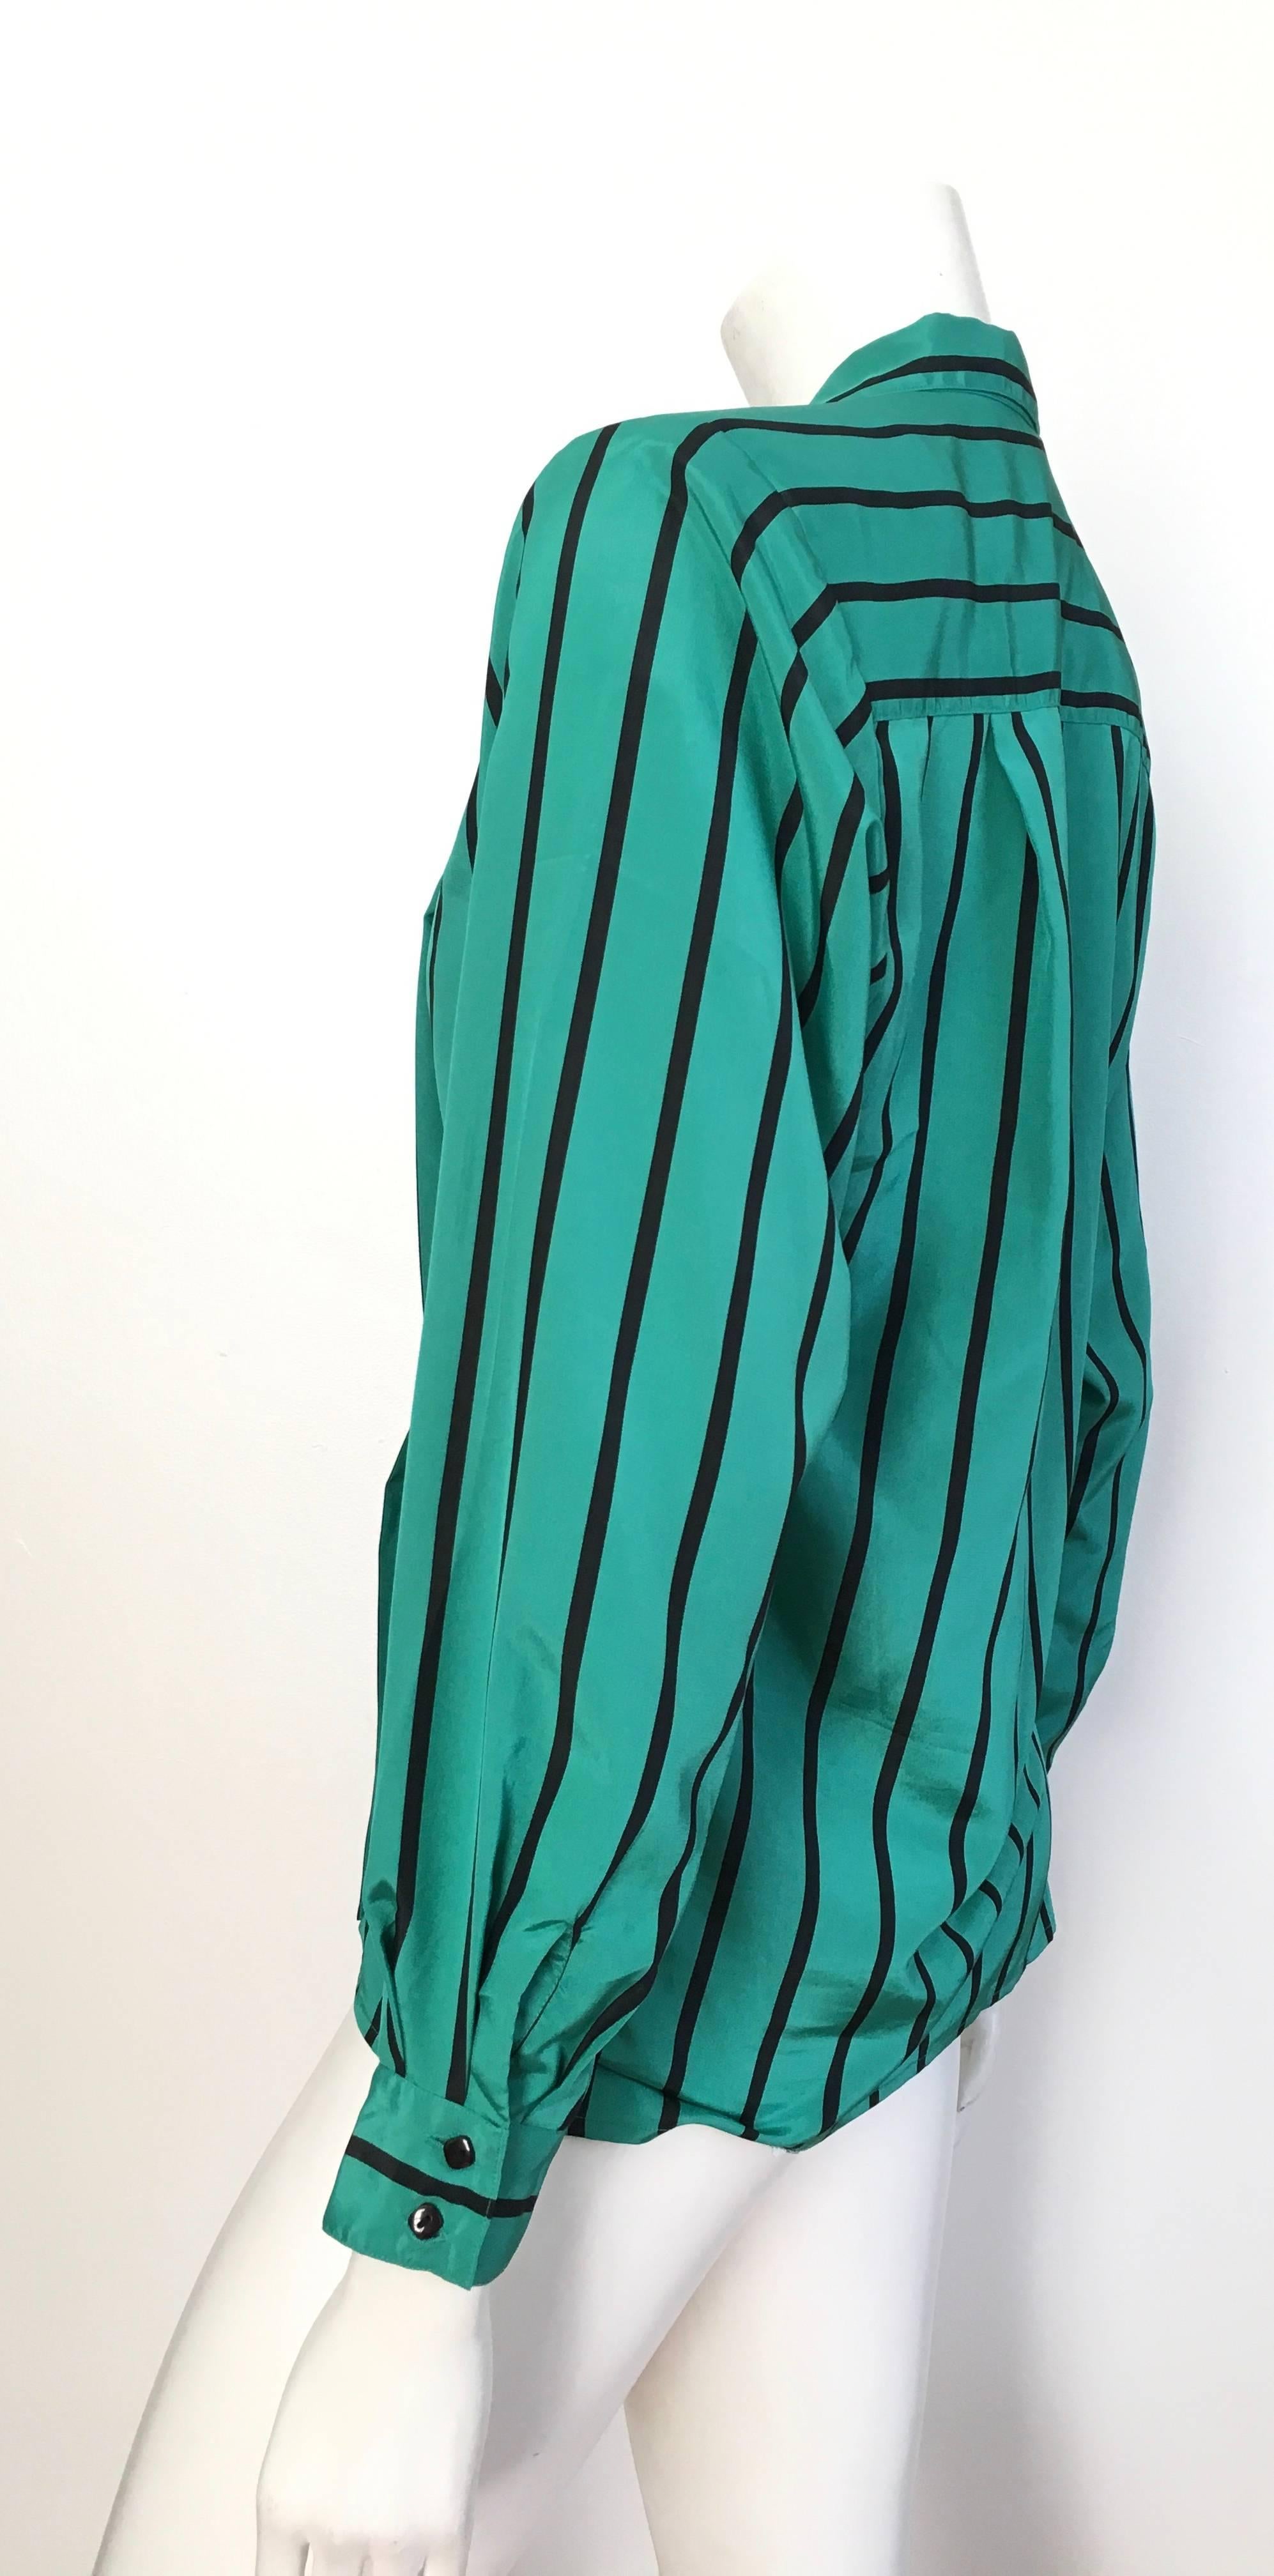 Geoffrey Beene 1980s Striped Long Sleeve Blouse Size 6. 1